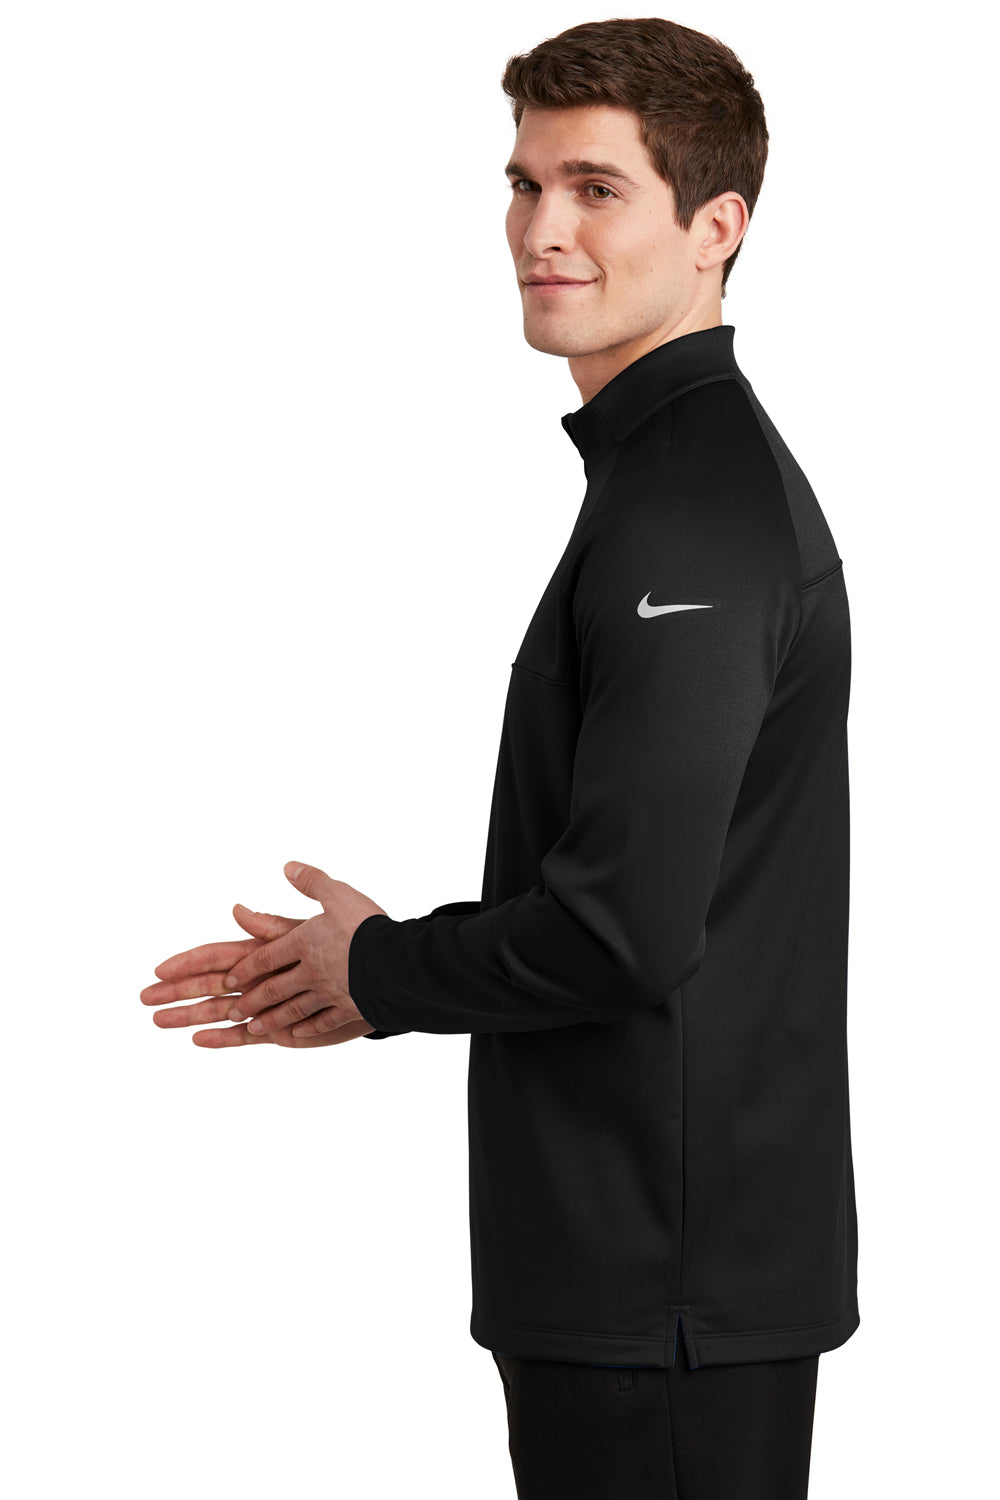 Nike NKAH6254 Mens Therma-Fit Moisture Wicking Fleece 1/4 Zip Sweatshirt Black Model Side